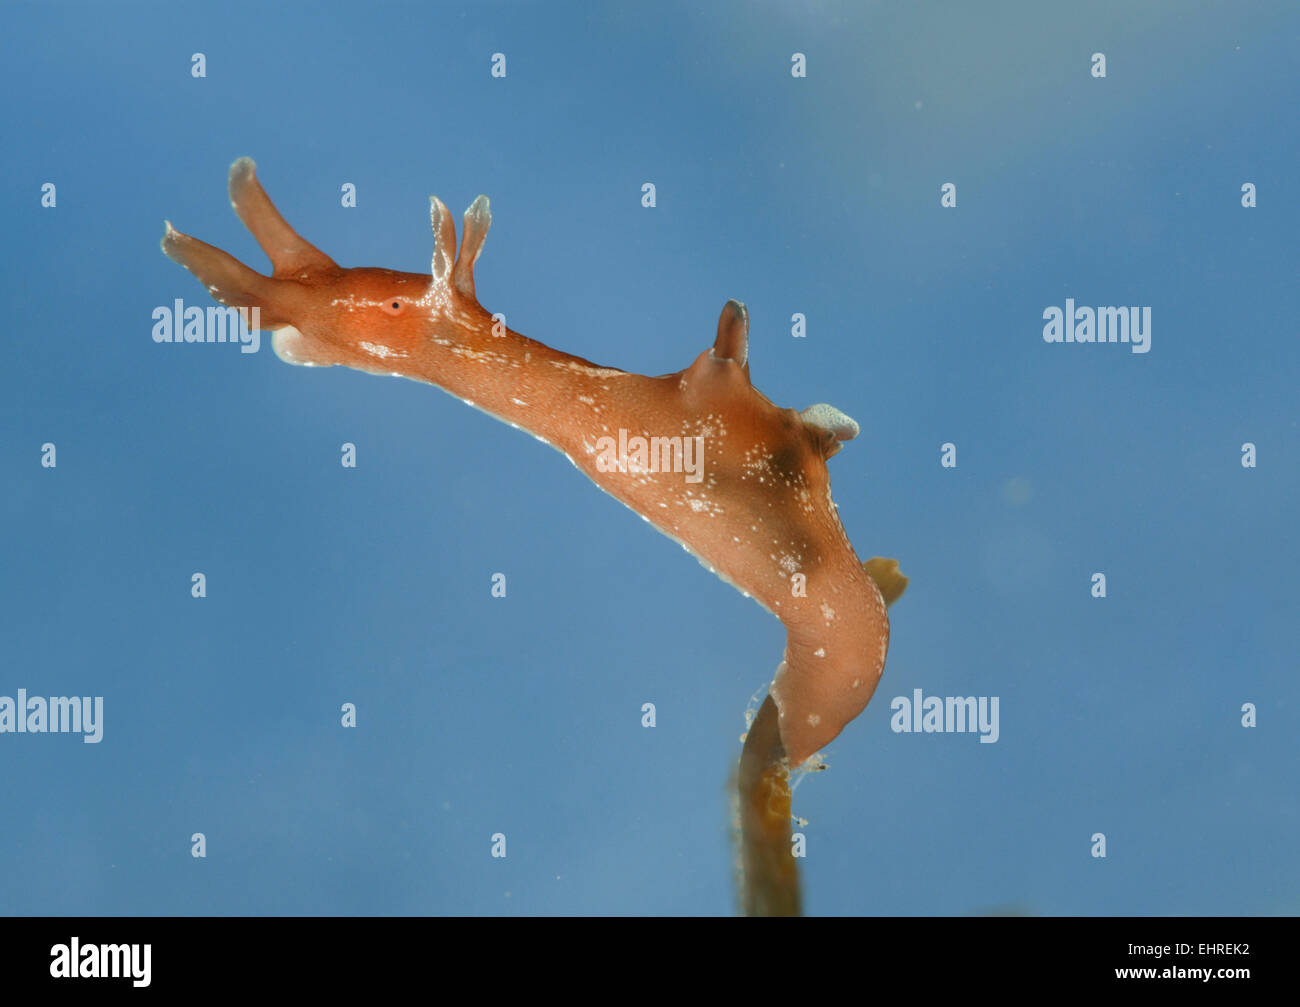 Sea Hare - Aplysia punctata Stock Photo